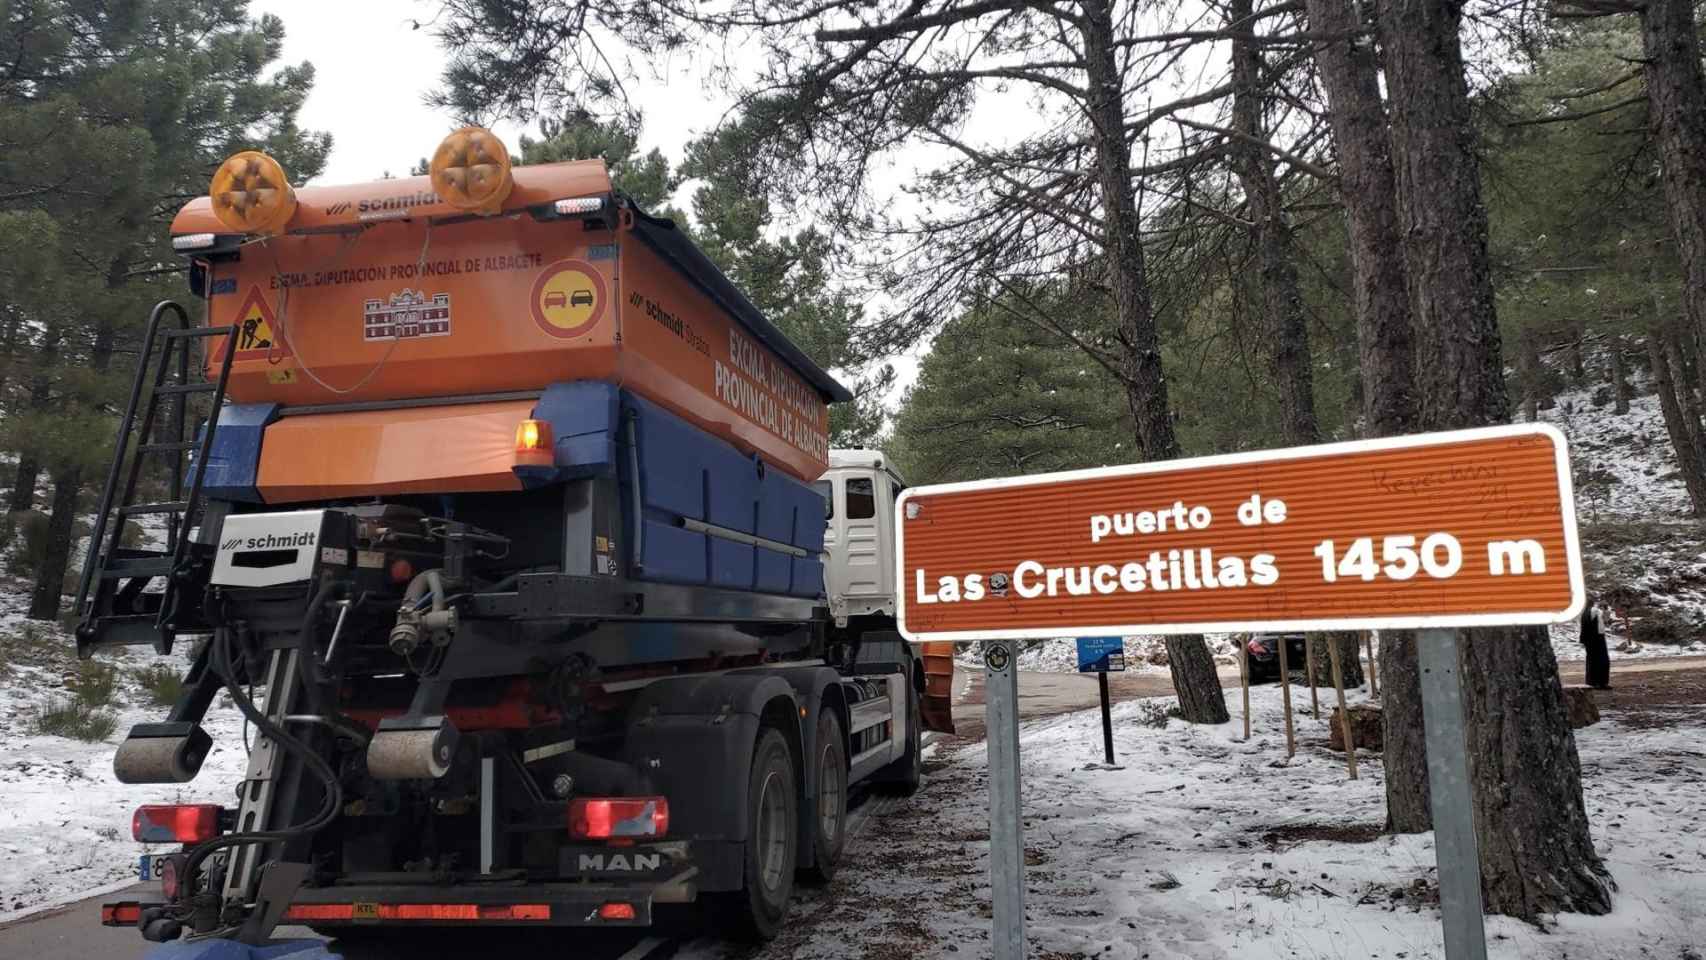 Un camión echando sal en el puerto de Las Crucetillas. Foto: Diputación de Albacete